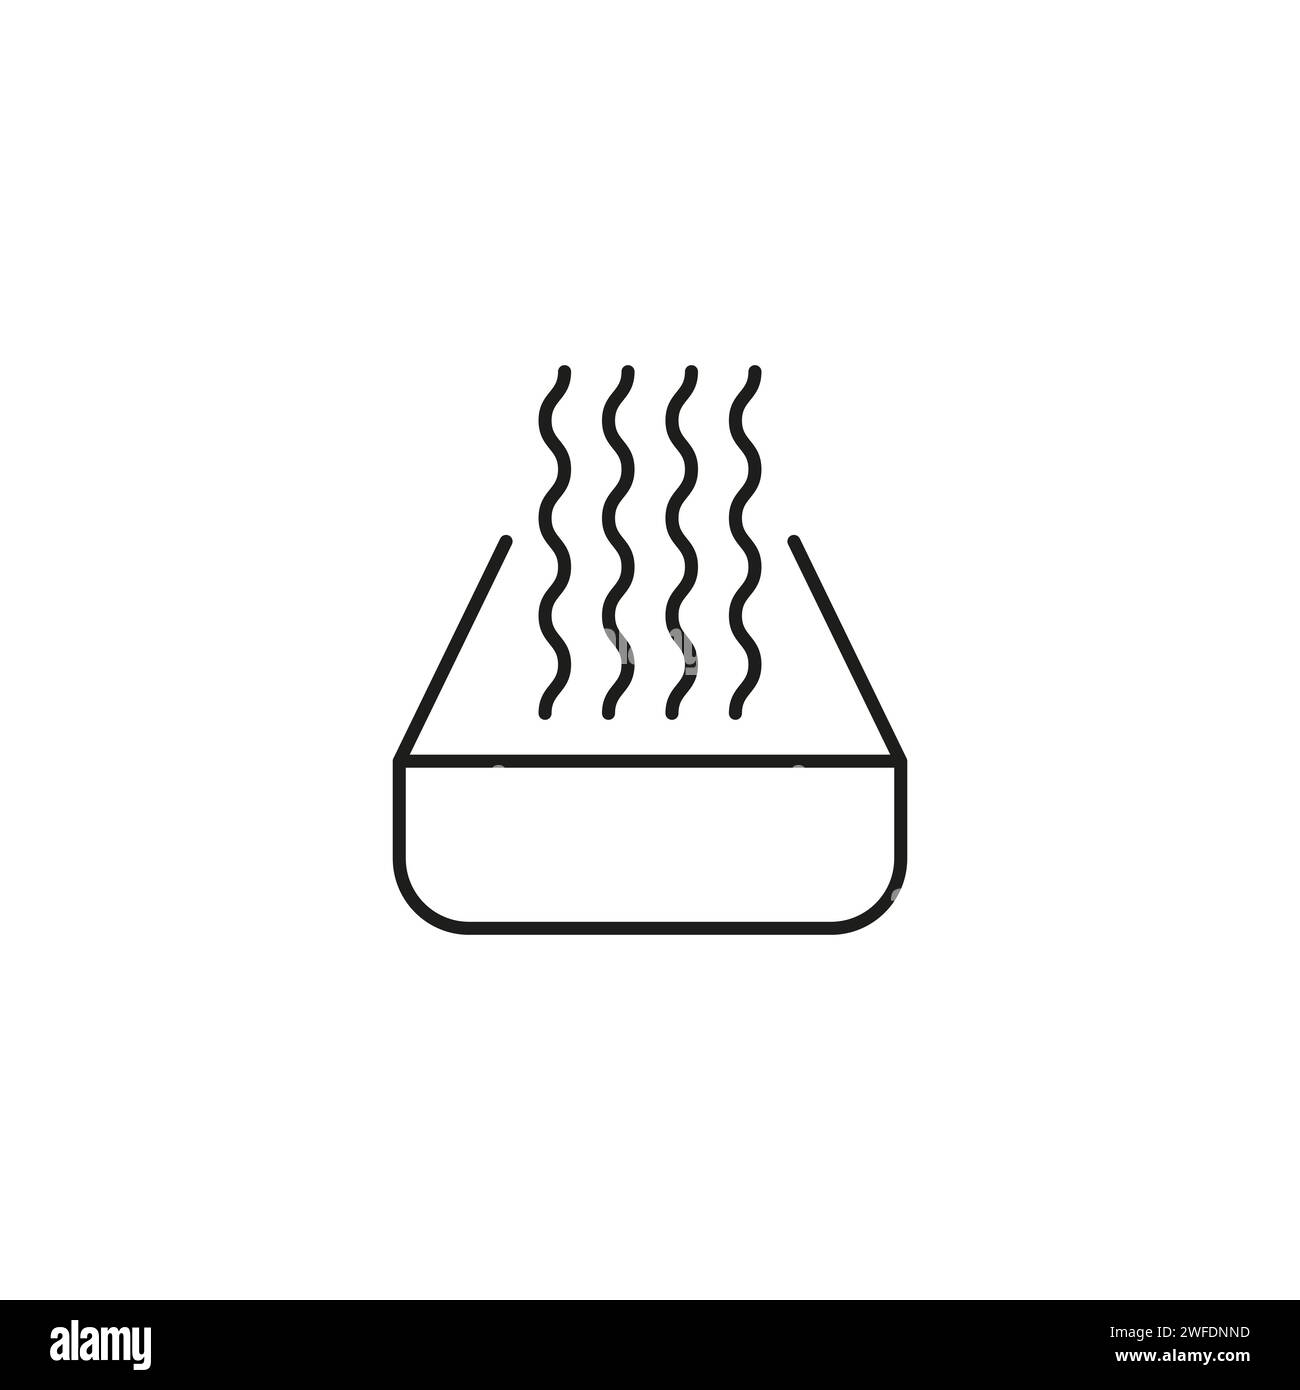 icona dell'onda di calore. ondata di fuoco calda. odore di cibo sul forno. vapore di acqua bollente sul piano cottura. Illustrazione vettoriale. immagine stock. EPS 10. Illustrazione Vettoriale